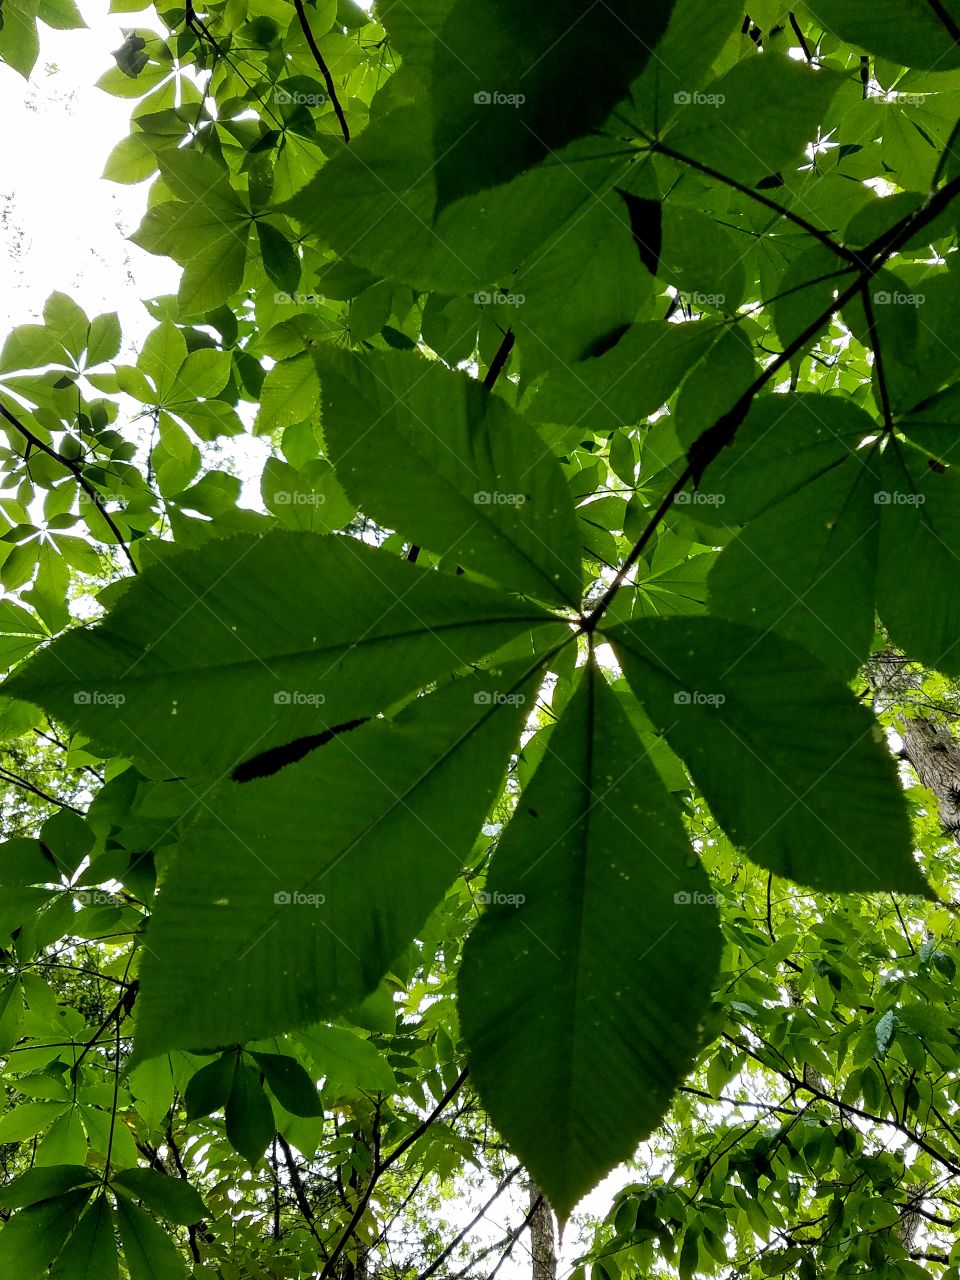 Horse Chestnut leaves